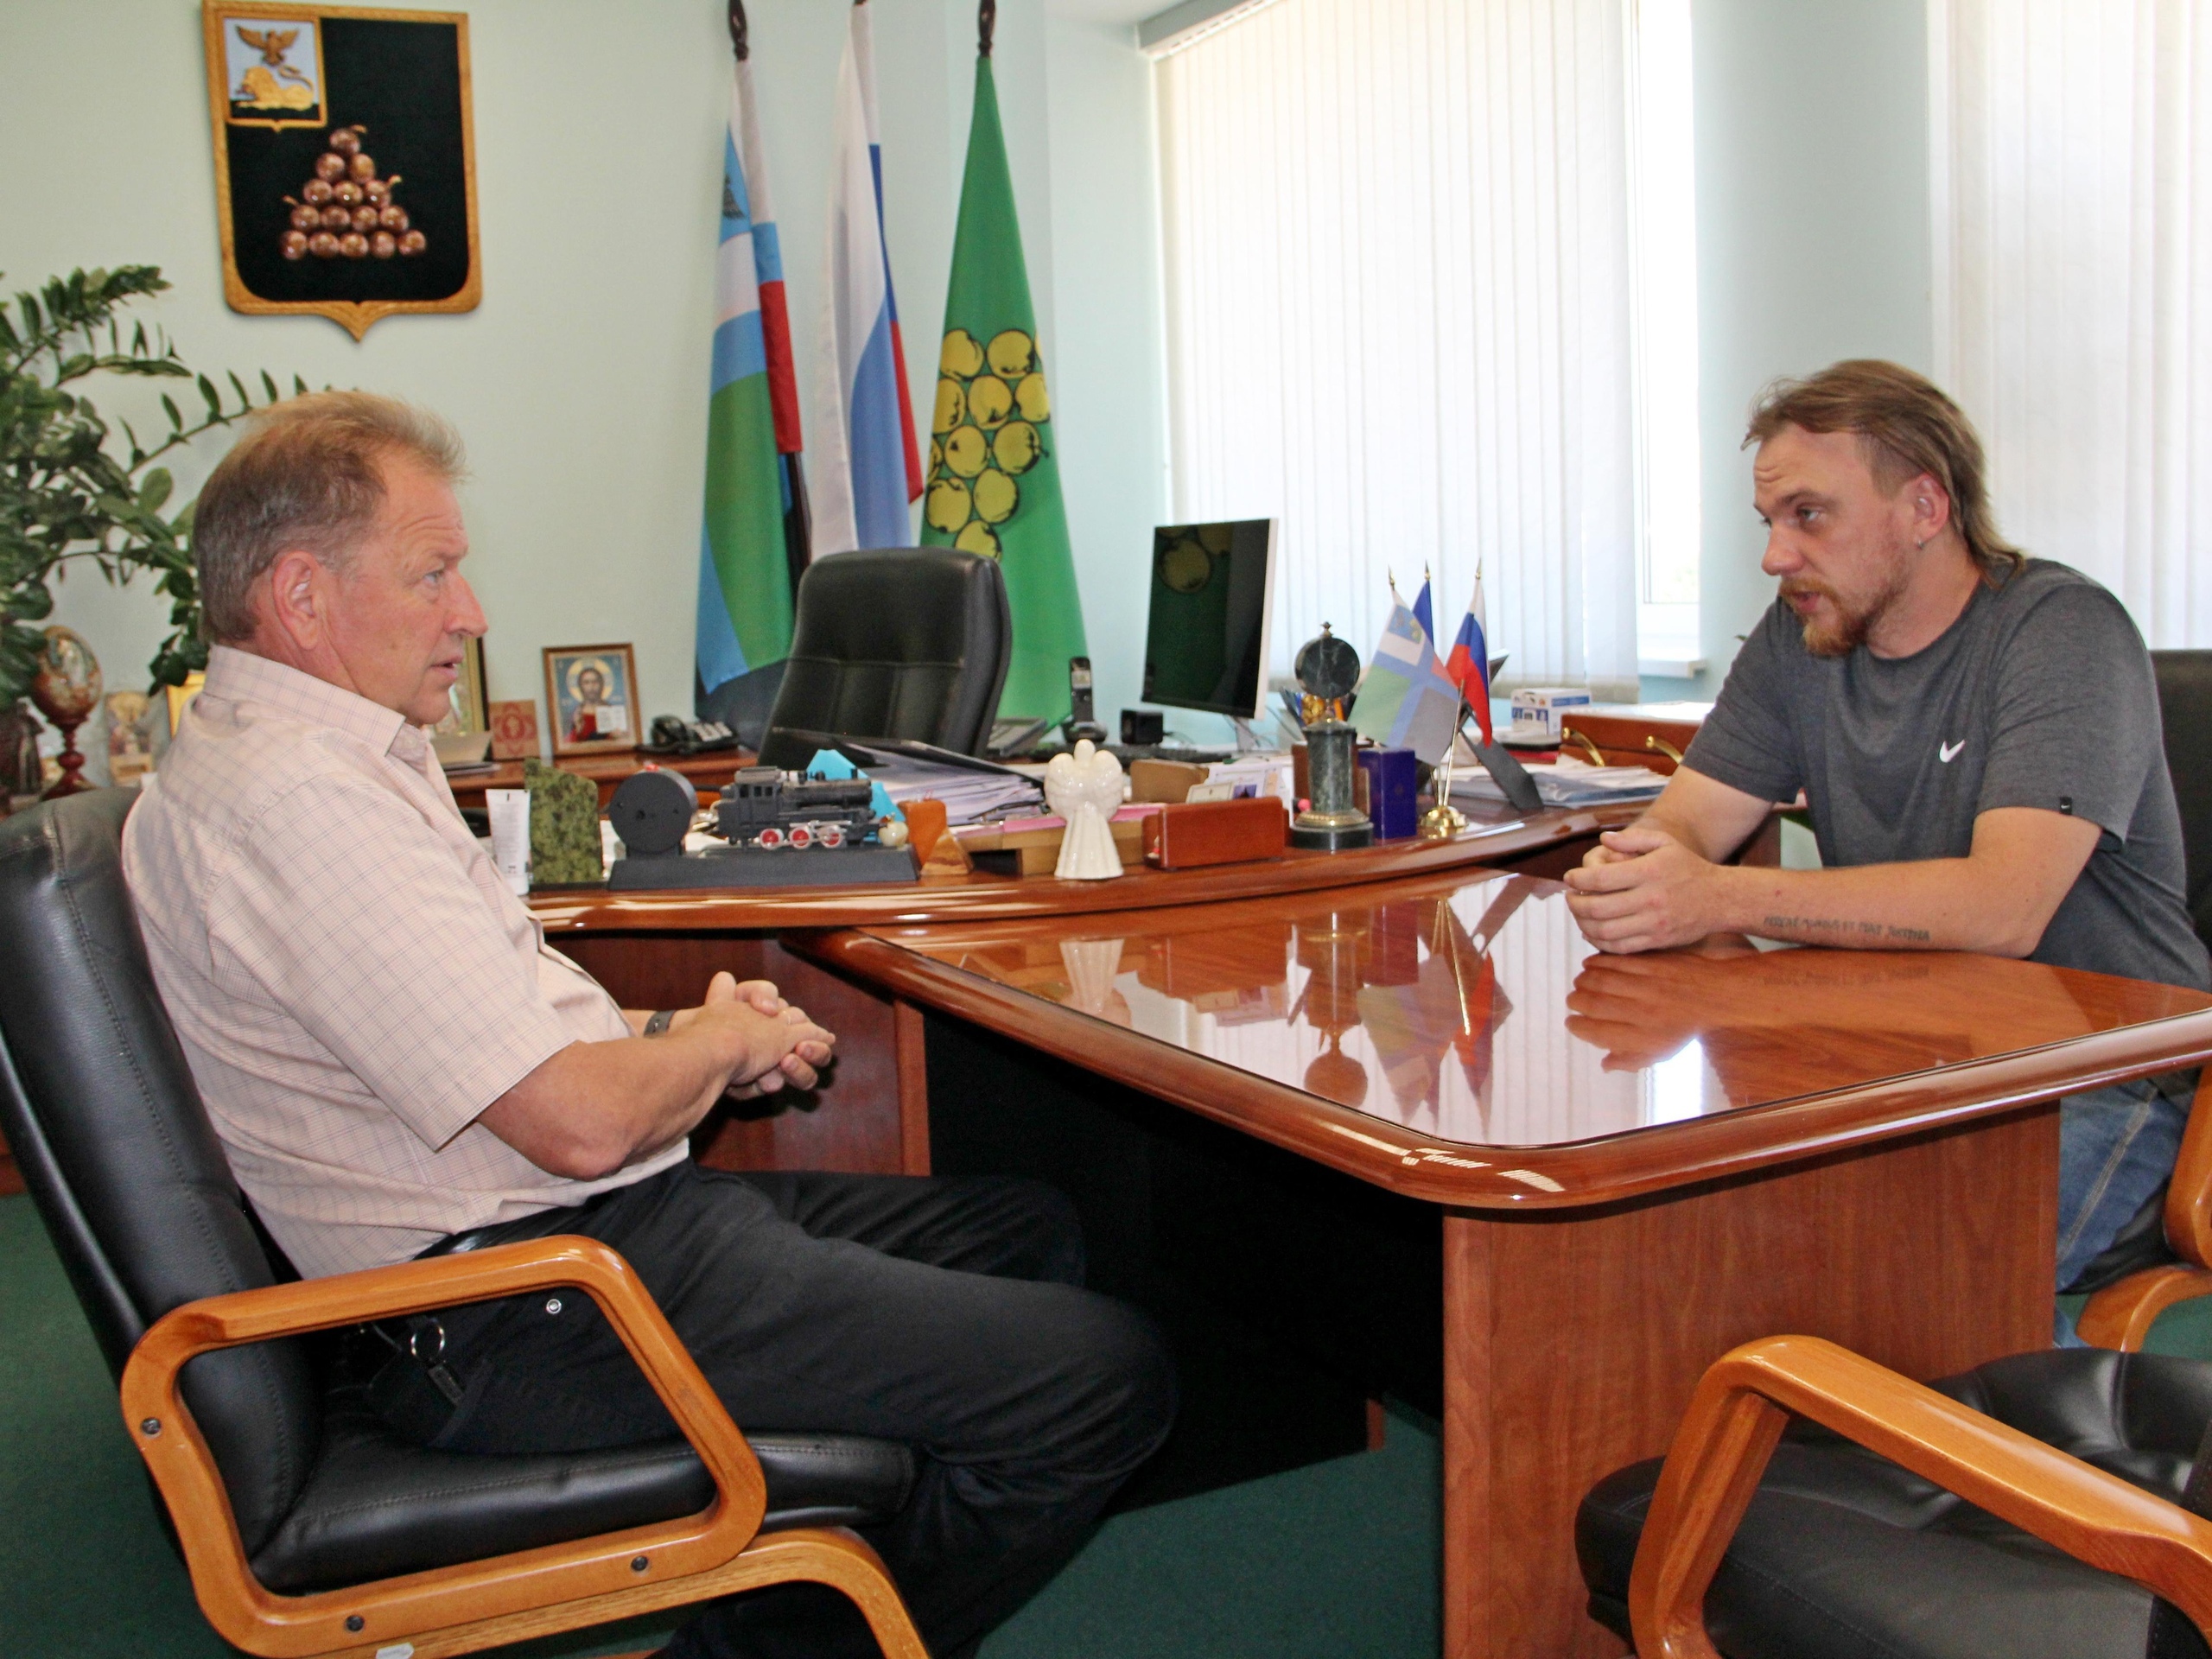 Сегодня прошла плановая встреча с руководителем некоммерческой организации «Валуйский мотоклуб» Сергеем Шестовым.